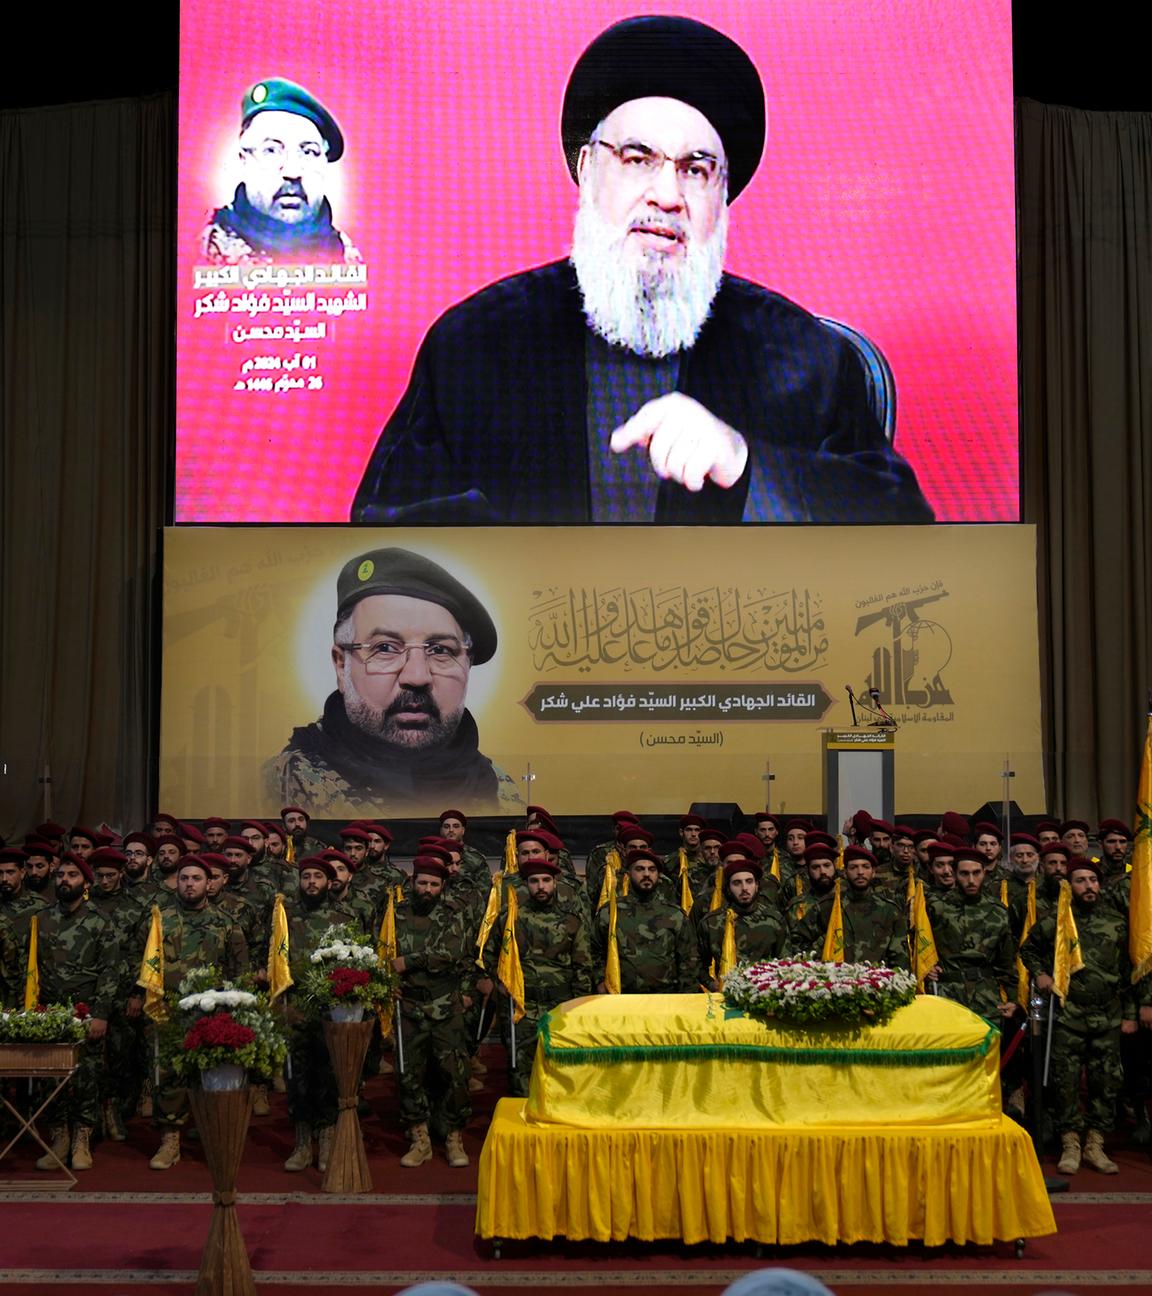 Libanon, Beirut: Hisbollah-Kämpfer tragen ihre Gruppenfahnen bei einem Trauerzug, während sie hinter dem Sarg ihres Befehlshabers Fouad Shukur stehen. Hassan Nasrallah, Hisbollah-Generalsekretär, auf einem Bildschirm zu sehen